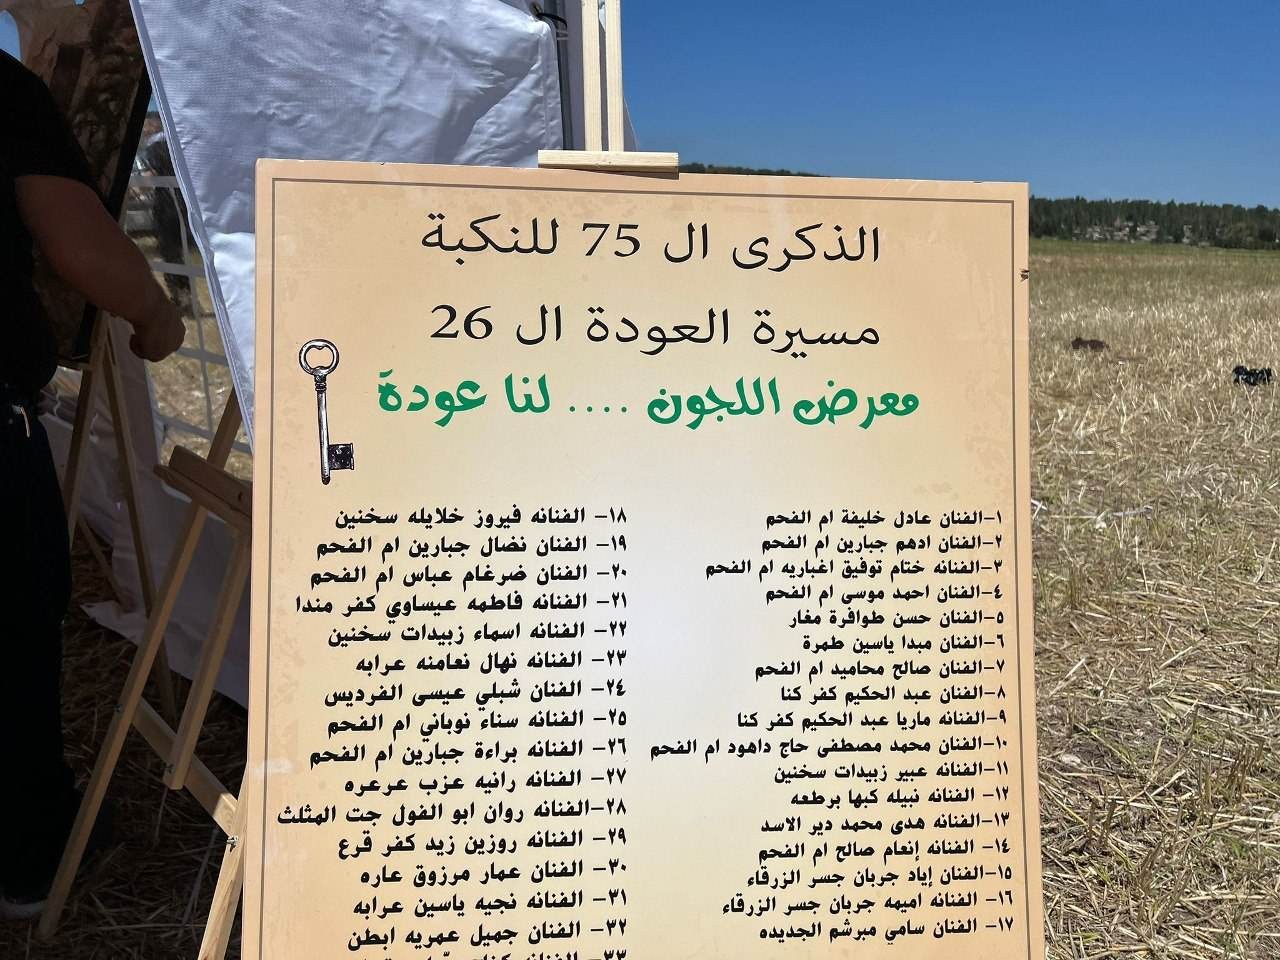 فلسطينيو الداخل المحتل يُنظمون فعاليات في الذكرى الـ75 للنكبة